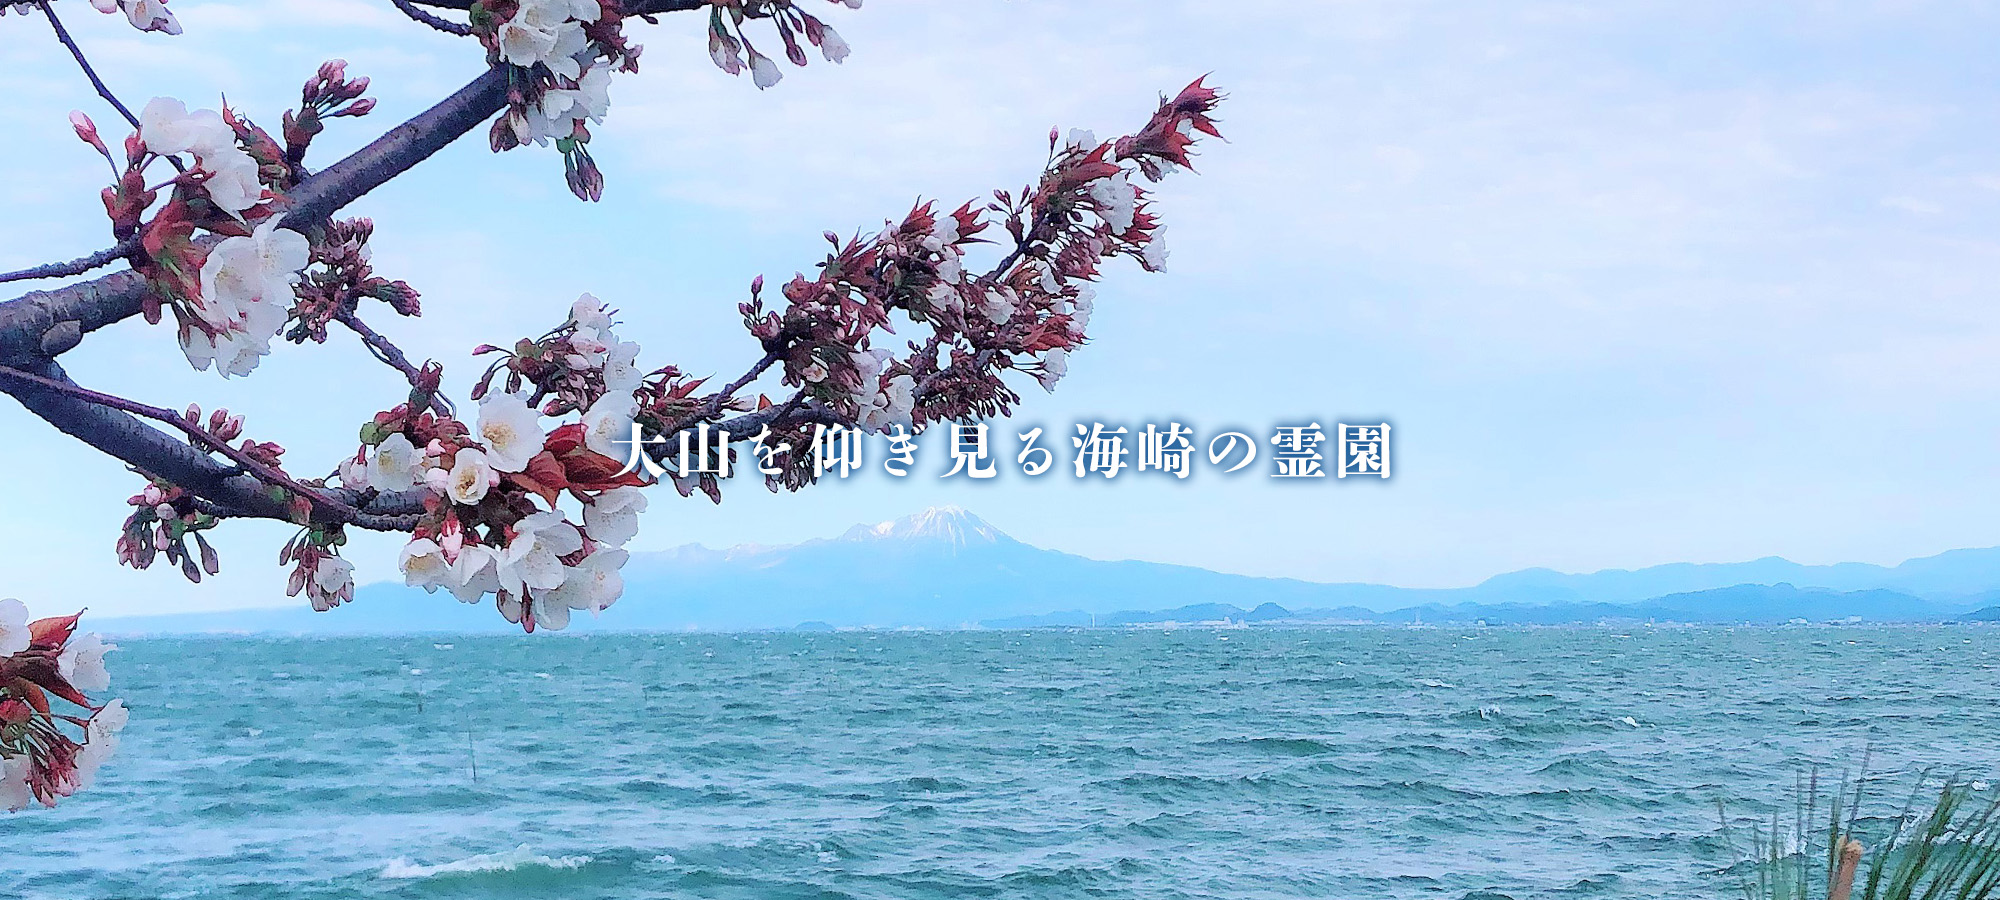 大山を仰ぎ見る海崎の霊園